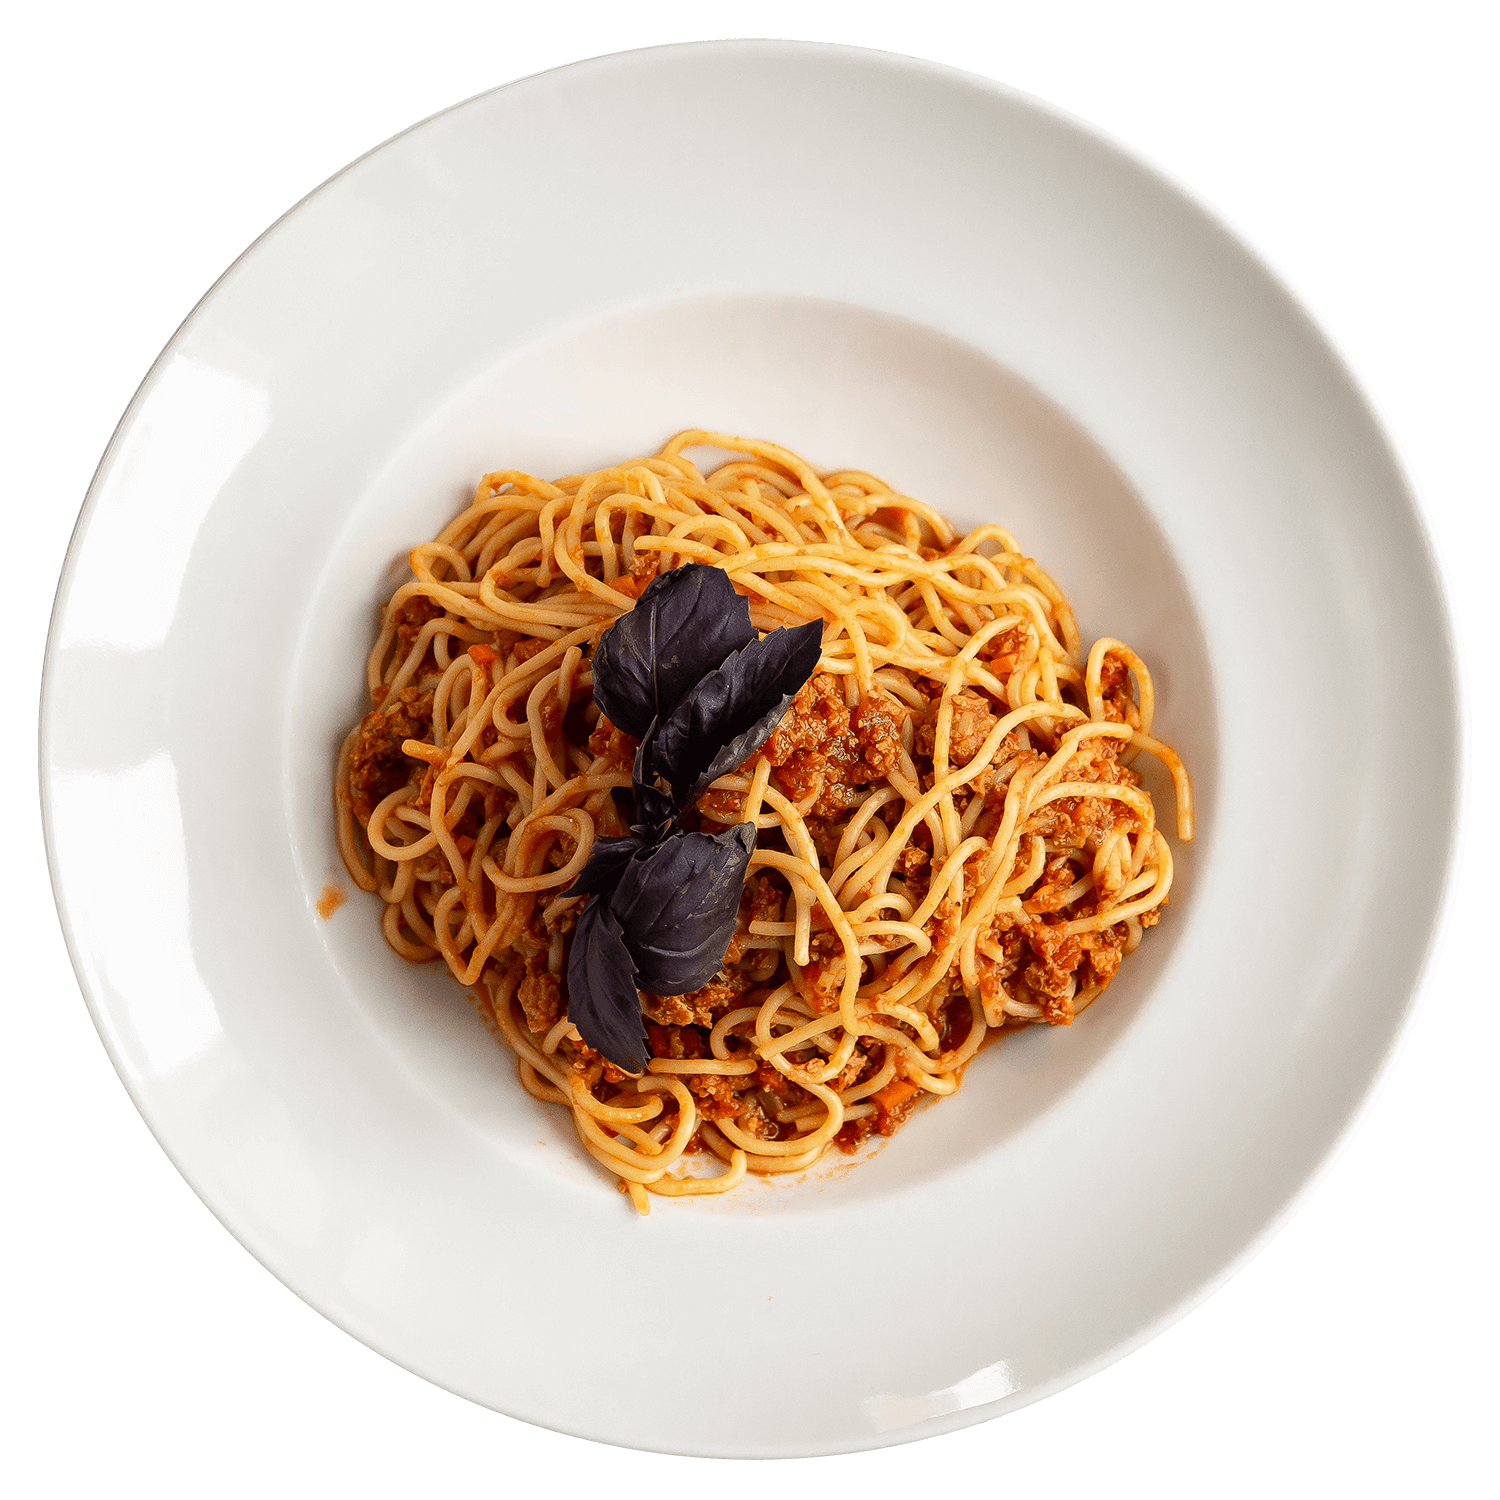 Спагетти Болоньезе
вегетарианская